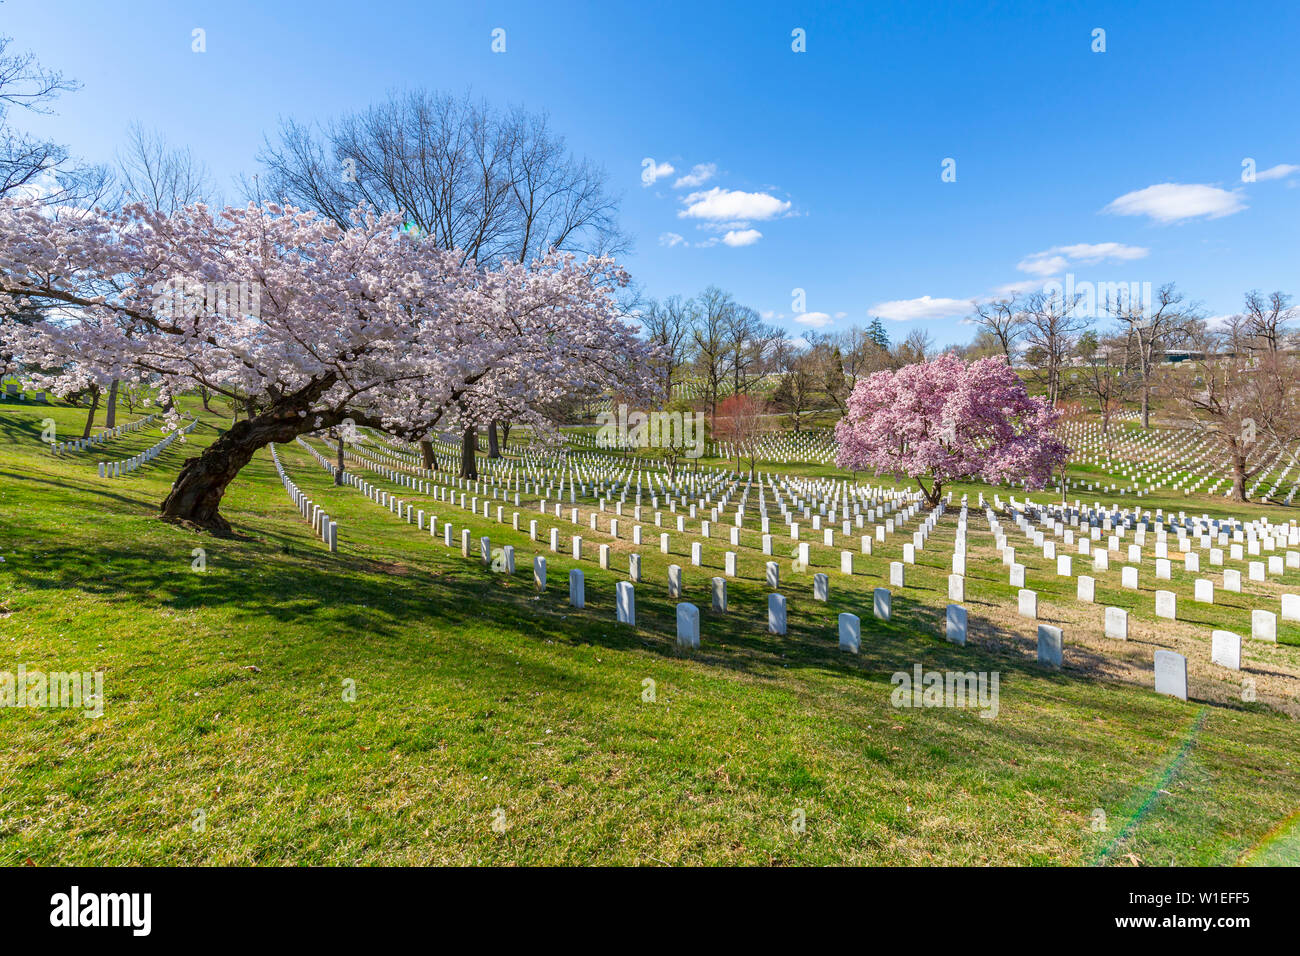 Avis de pierres tombales dans le Cimetière National d'Arlington au printemps, Washington D.C., Etats-Unis d'Amérique, Amérique du Nord Banque D'Images